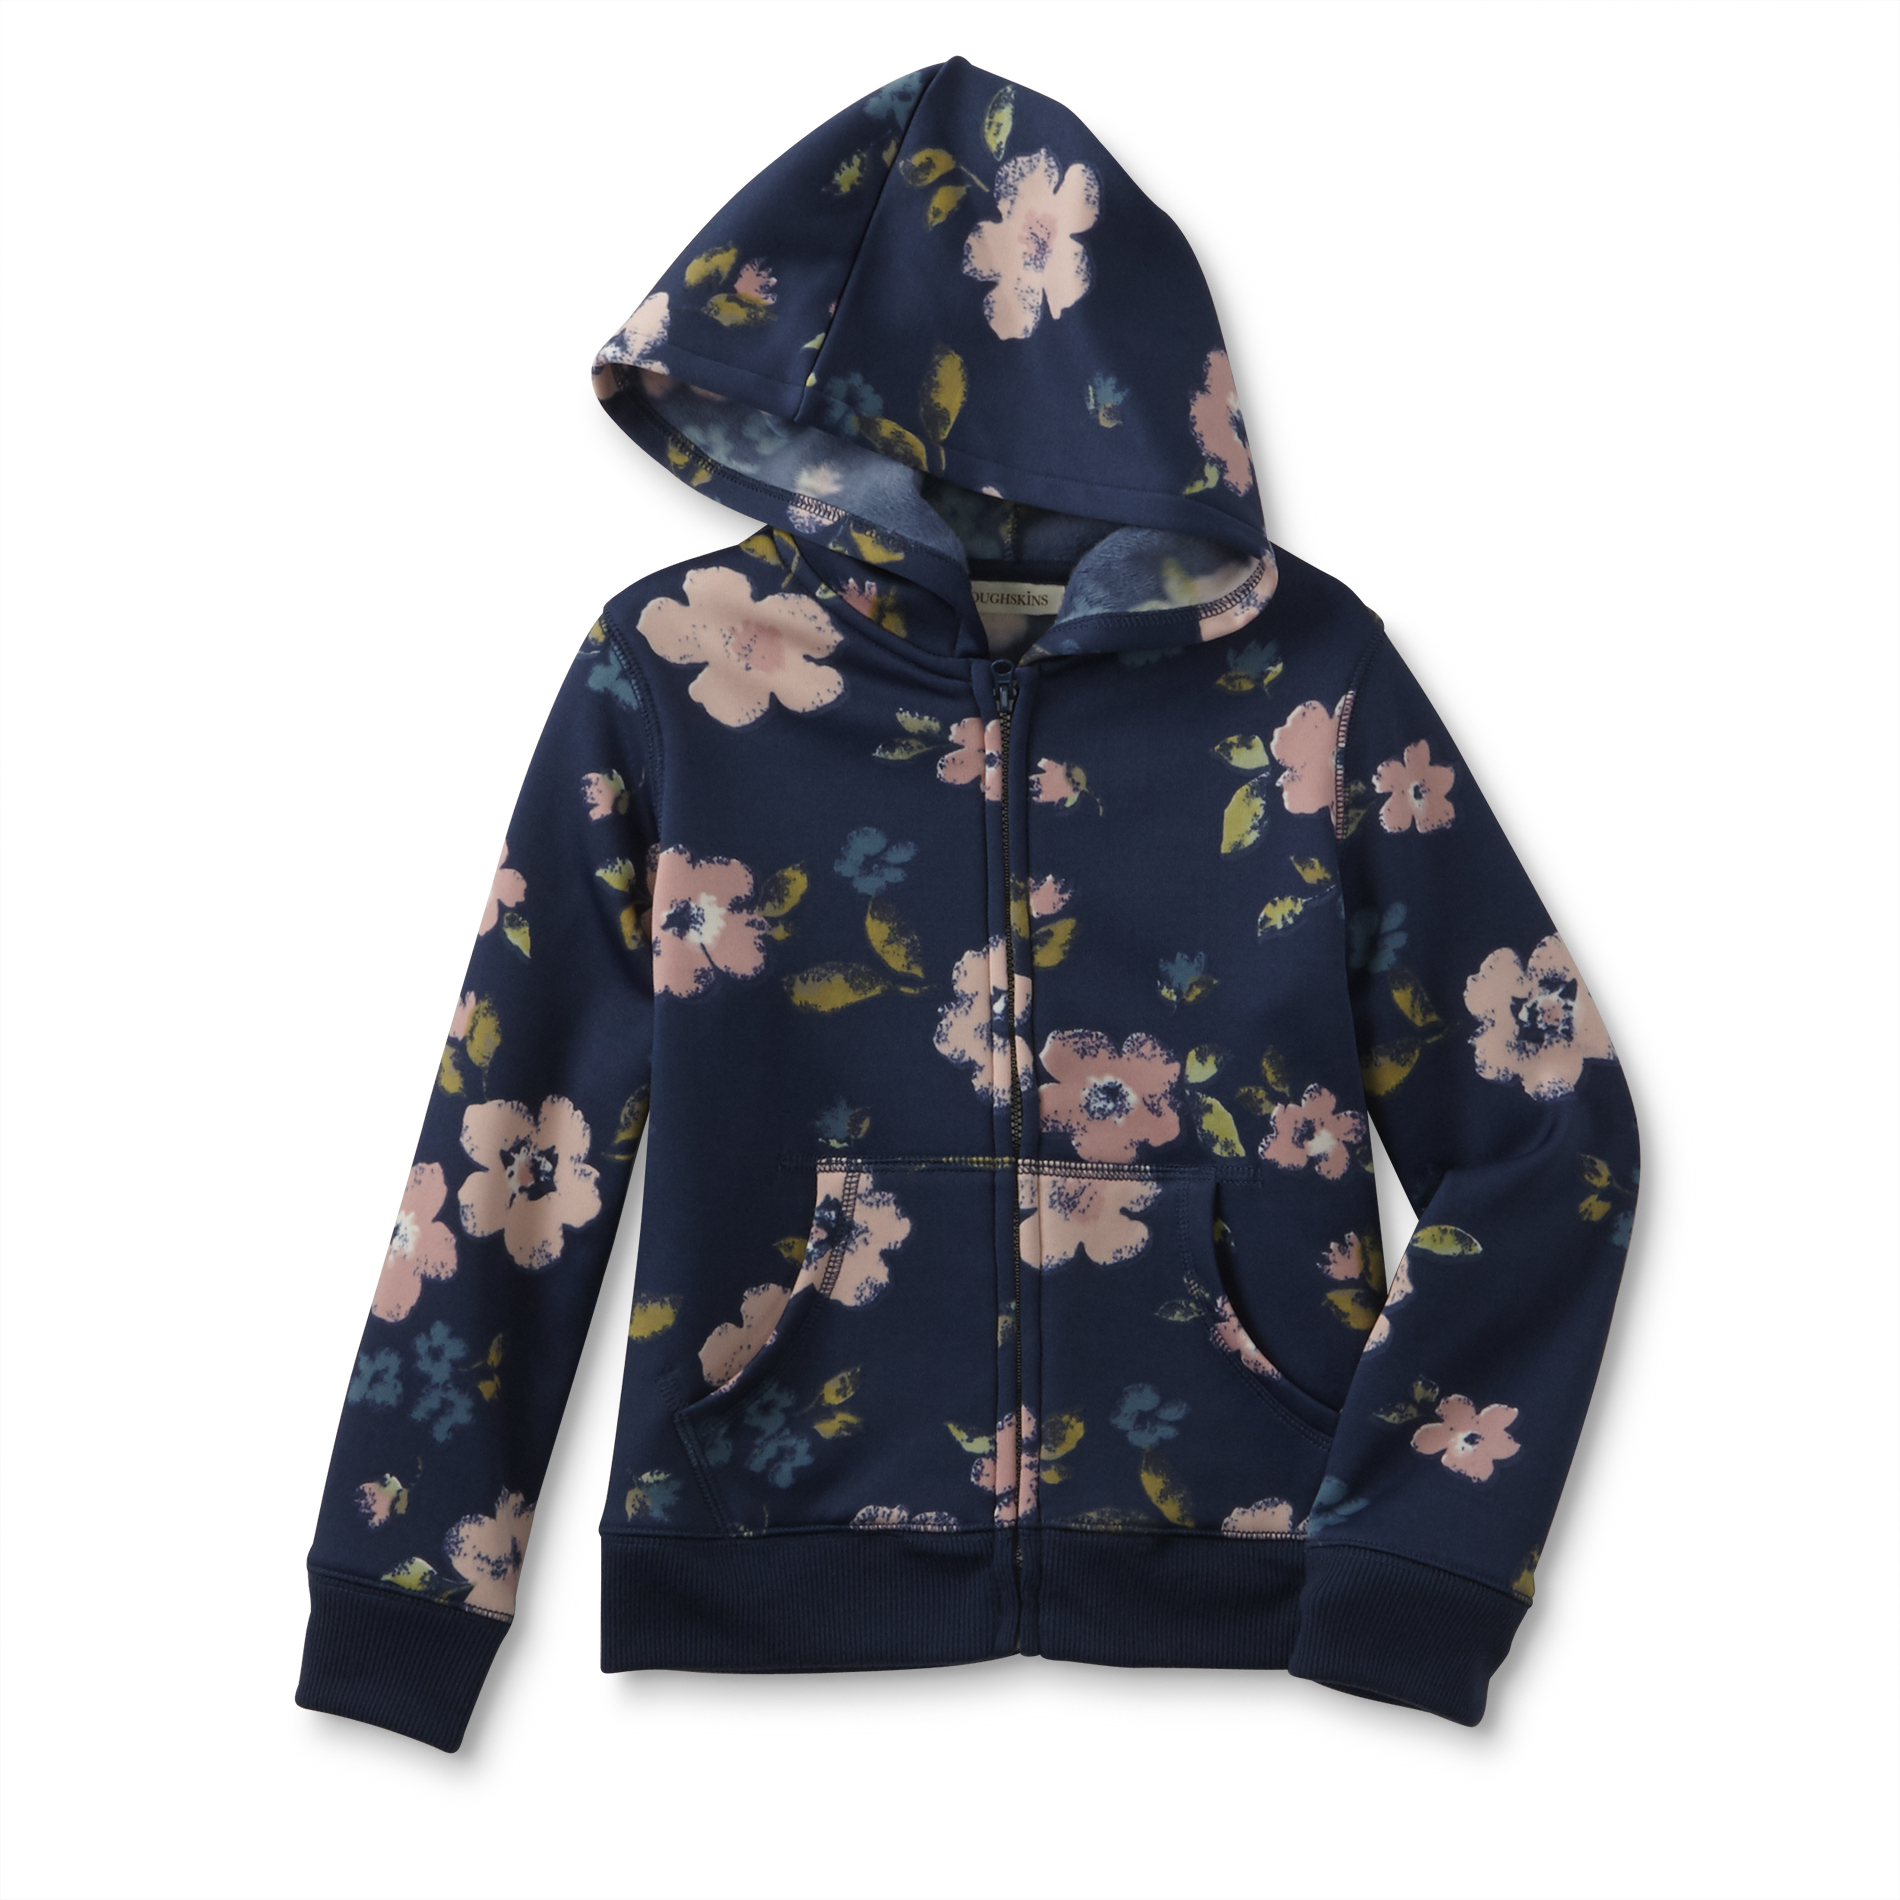 Toughskins Girl's Hoodie Jacket - Floral